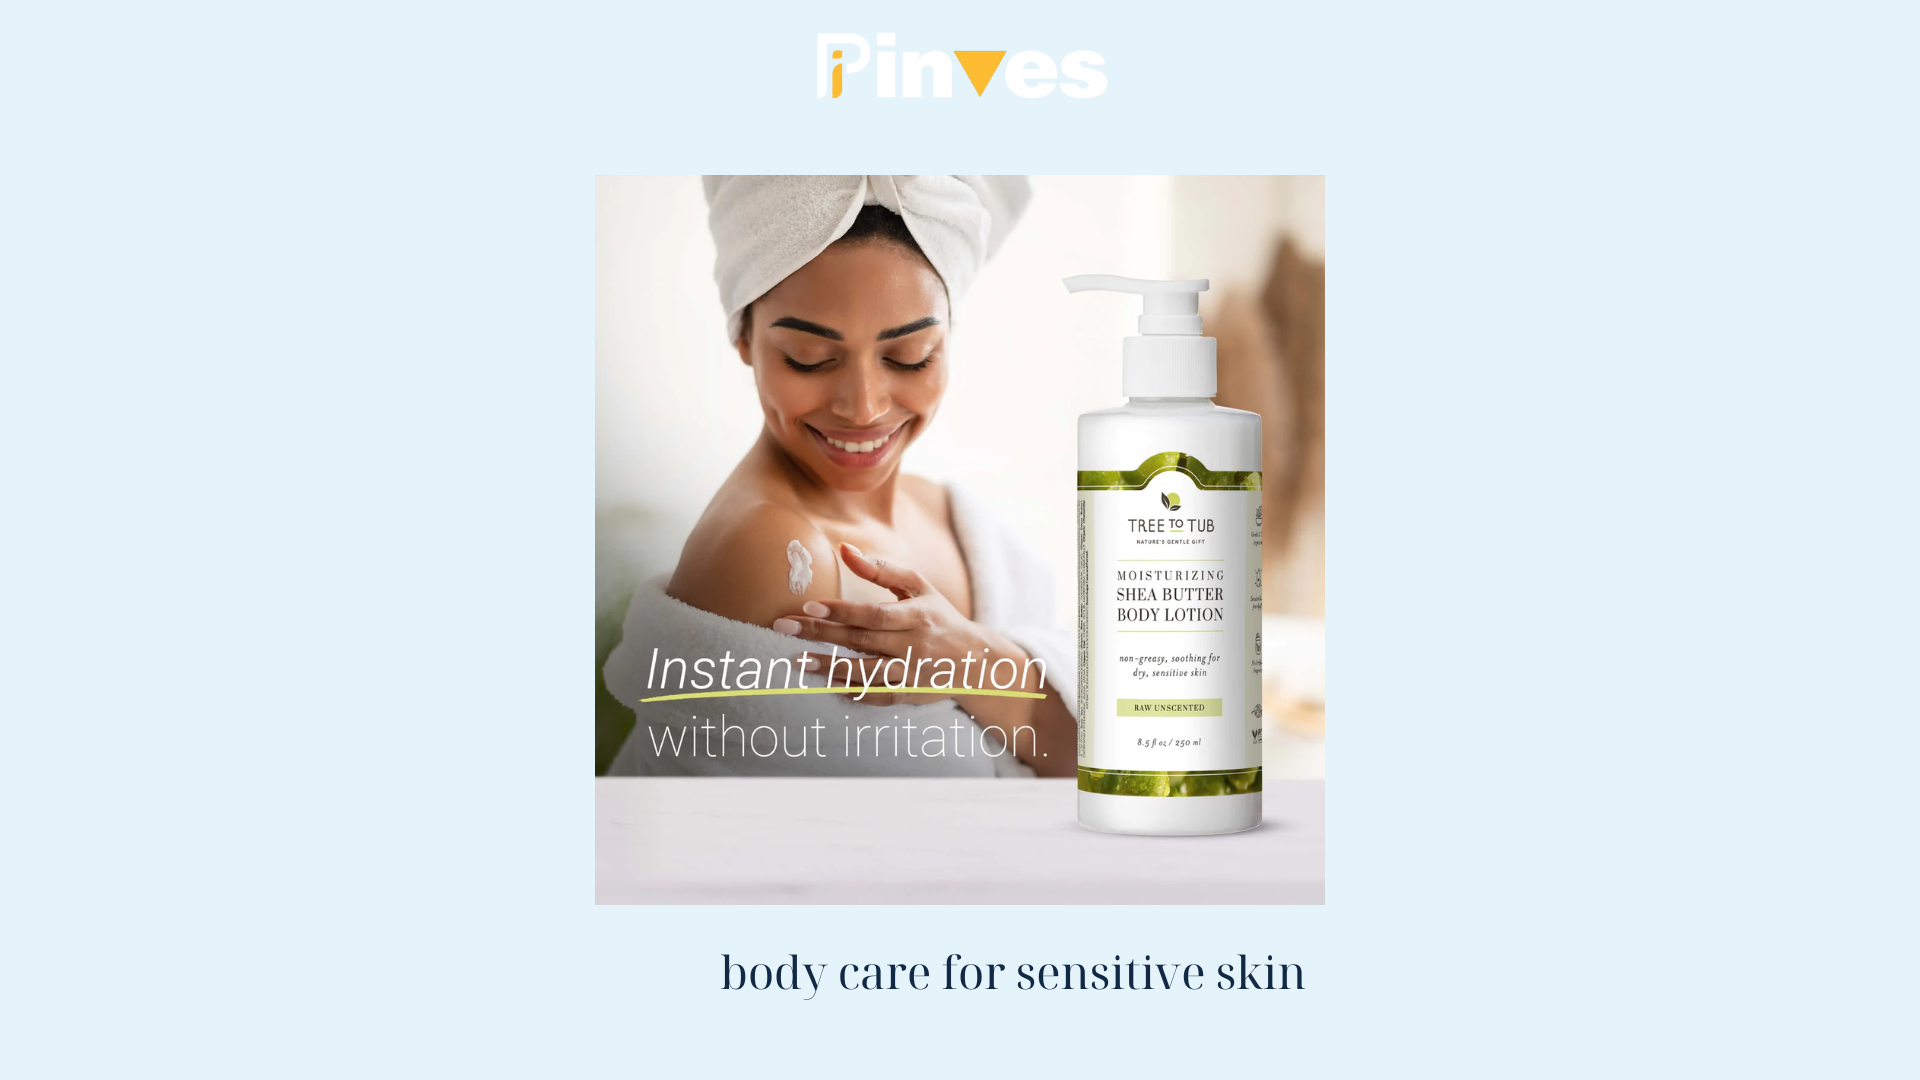 body care for sensitive skin